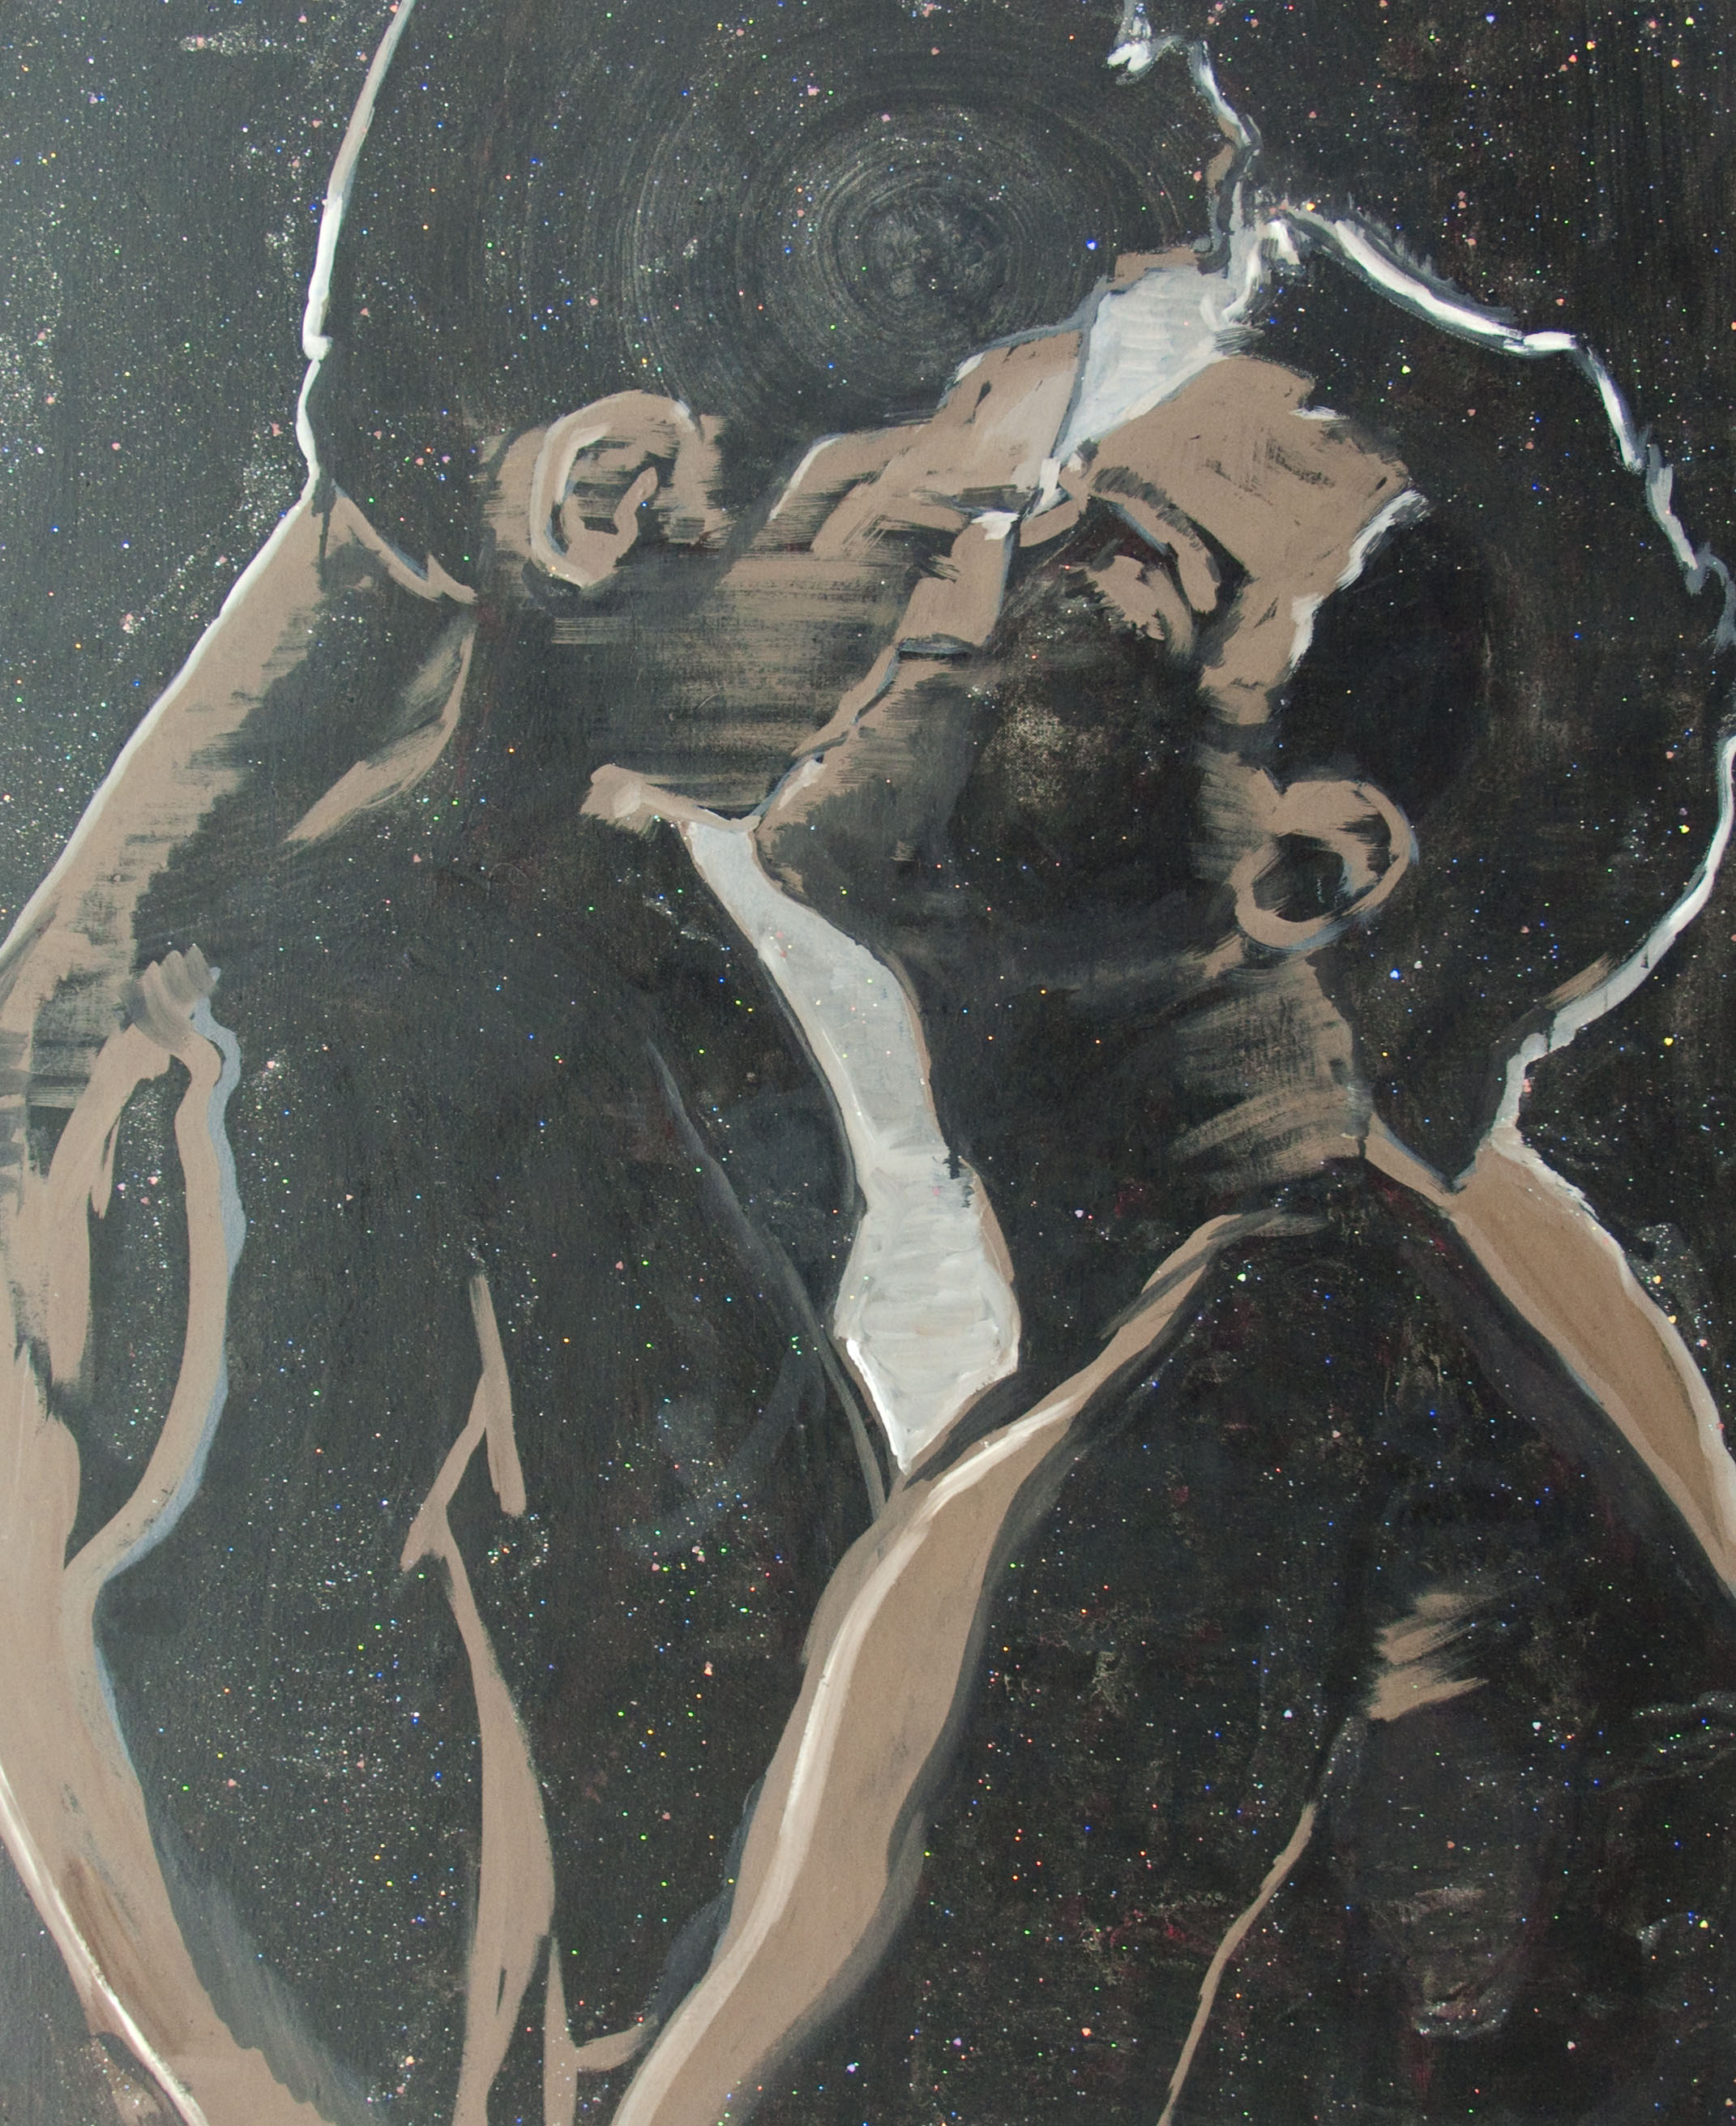 French Kissing, olej i akryl z brokatem na płótnie, 100 x 80 cm, 2013